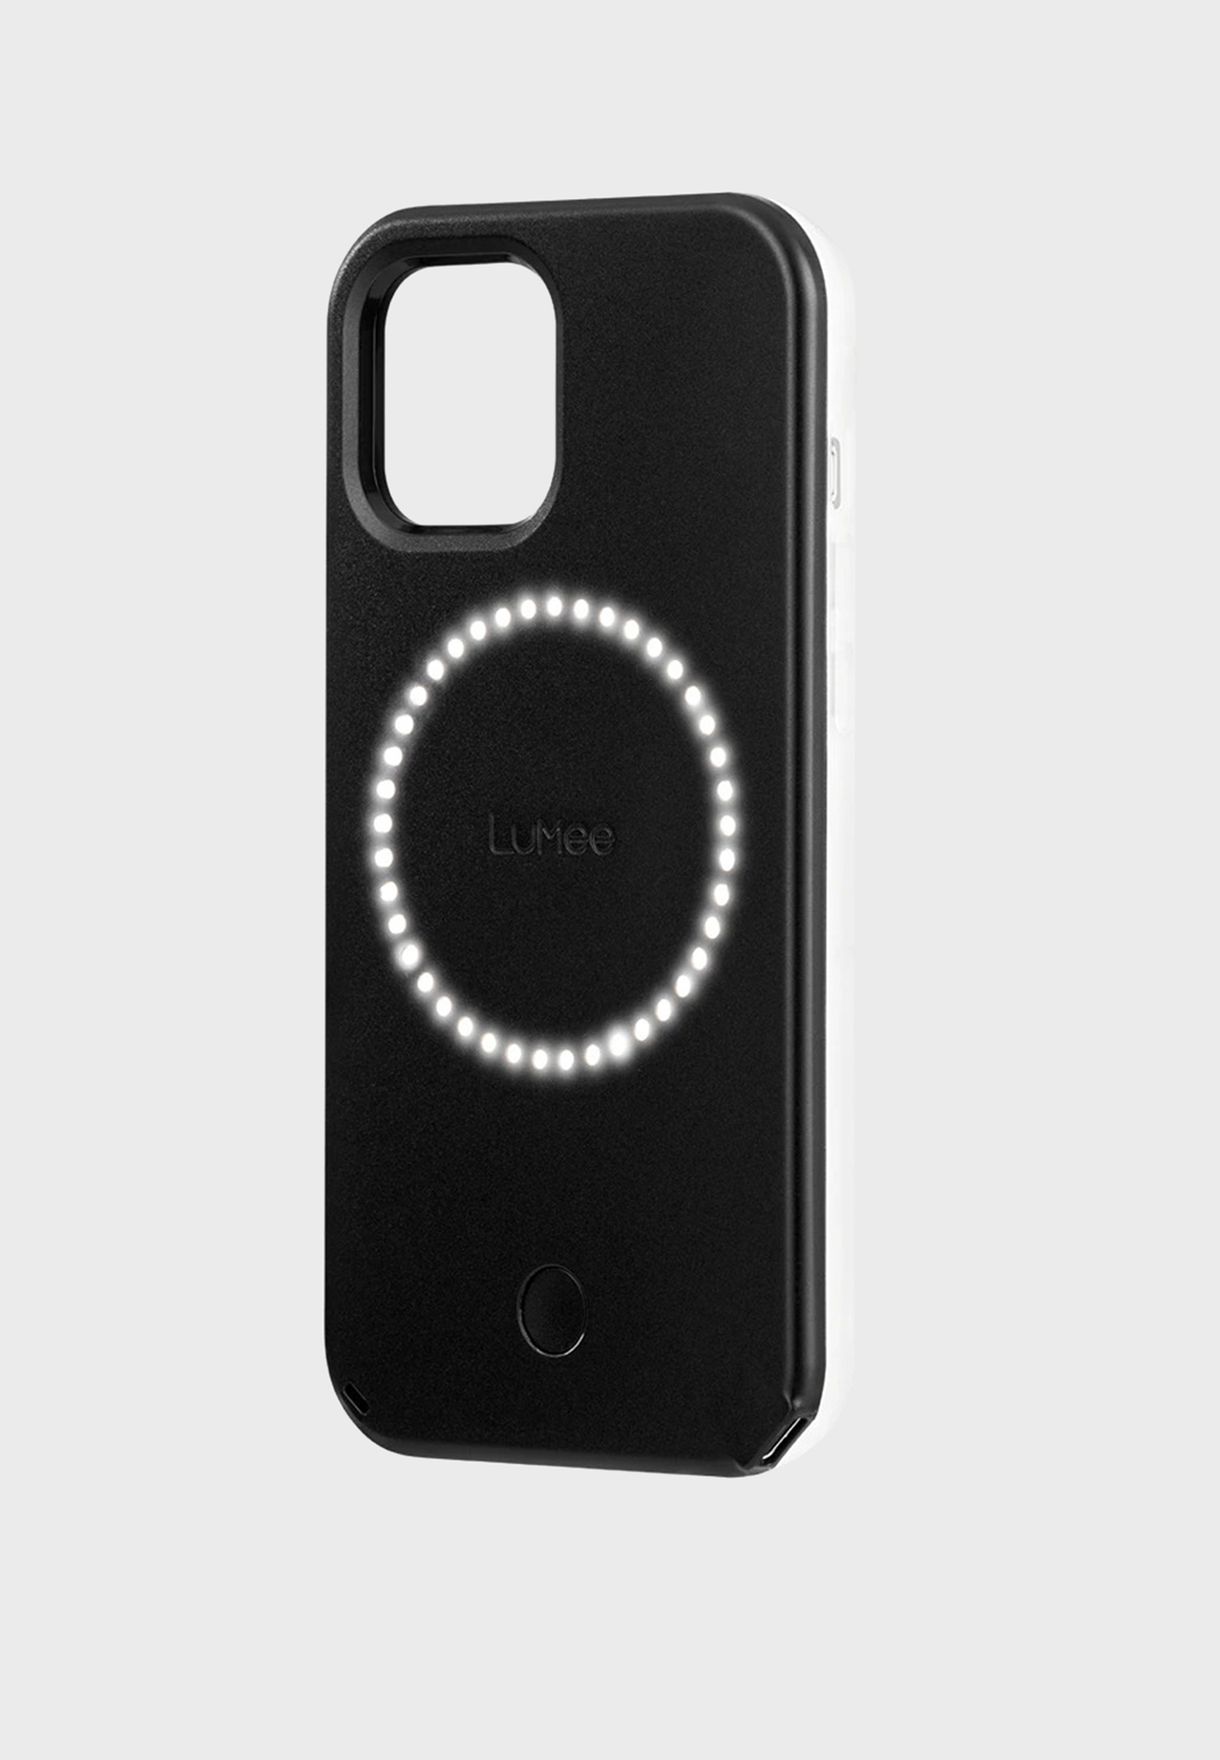 Halo Matte Black iPhone 12/12 Pro Max/12 Mini Case